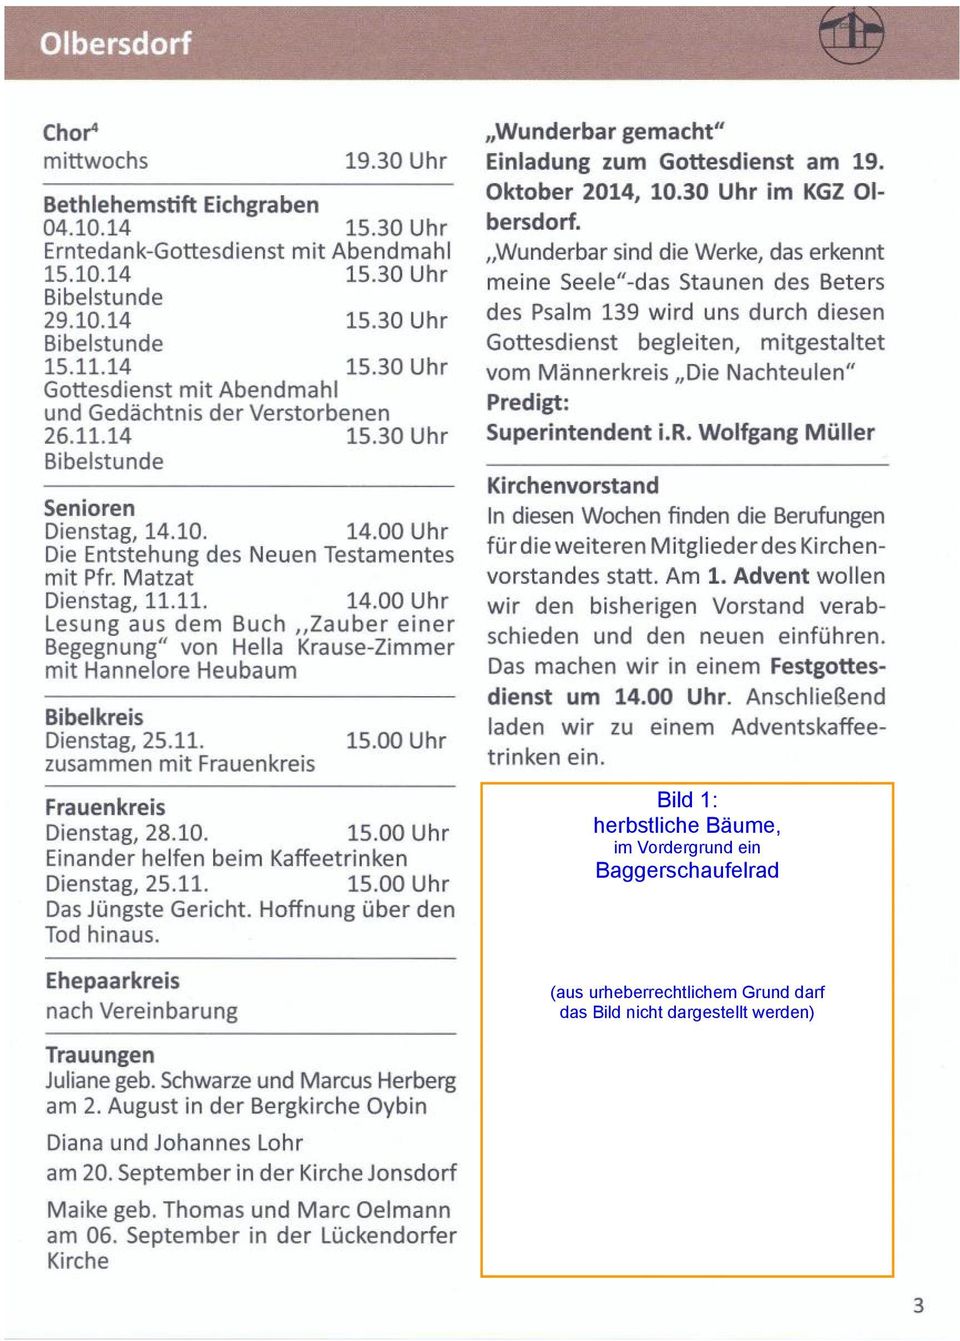 11. zusammen mit Frauenkreis 15.00 Uhr "Wunderbar gemacht" Einladung zum Gottesdienst am 19. Oktober 2014, 10.30 Uhr im KGZ 01- bersdorf.